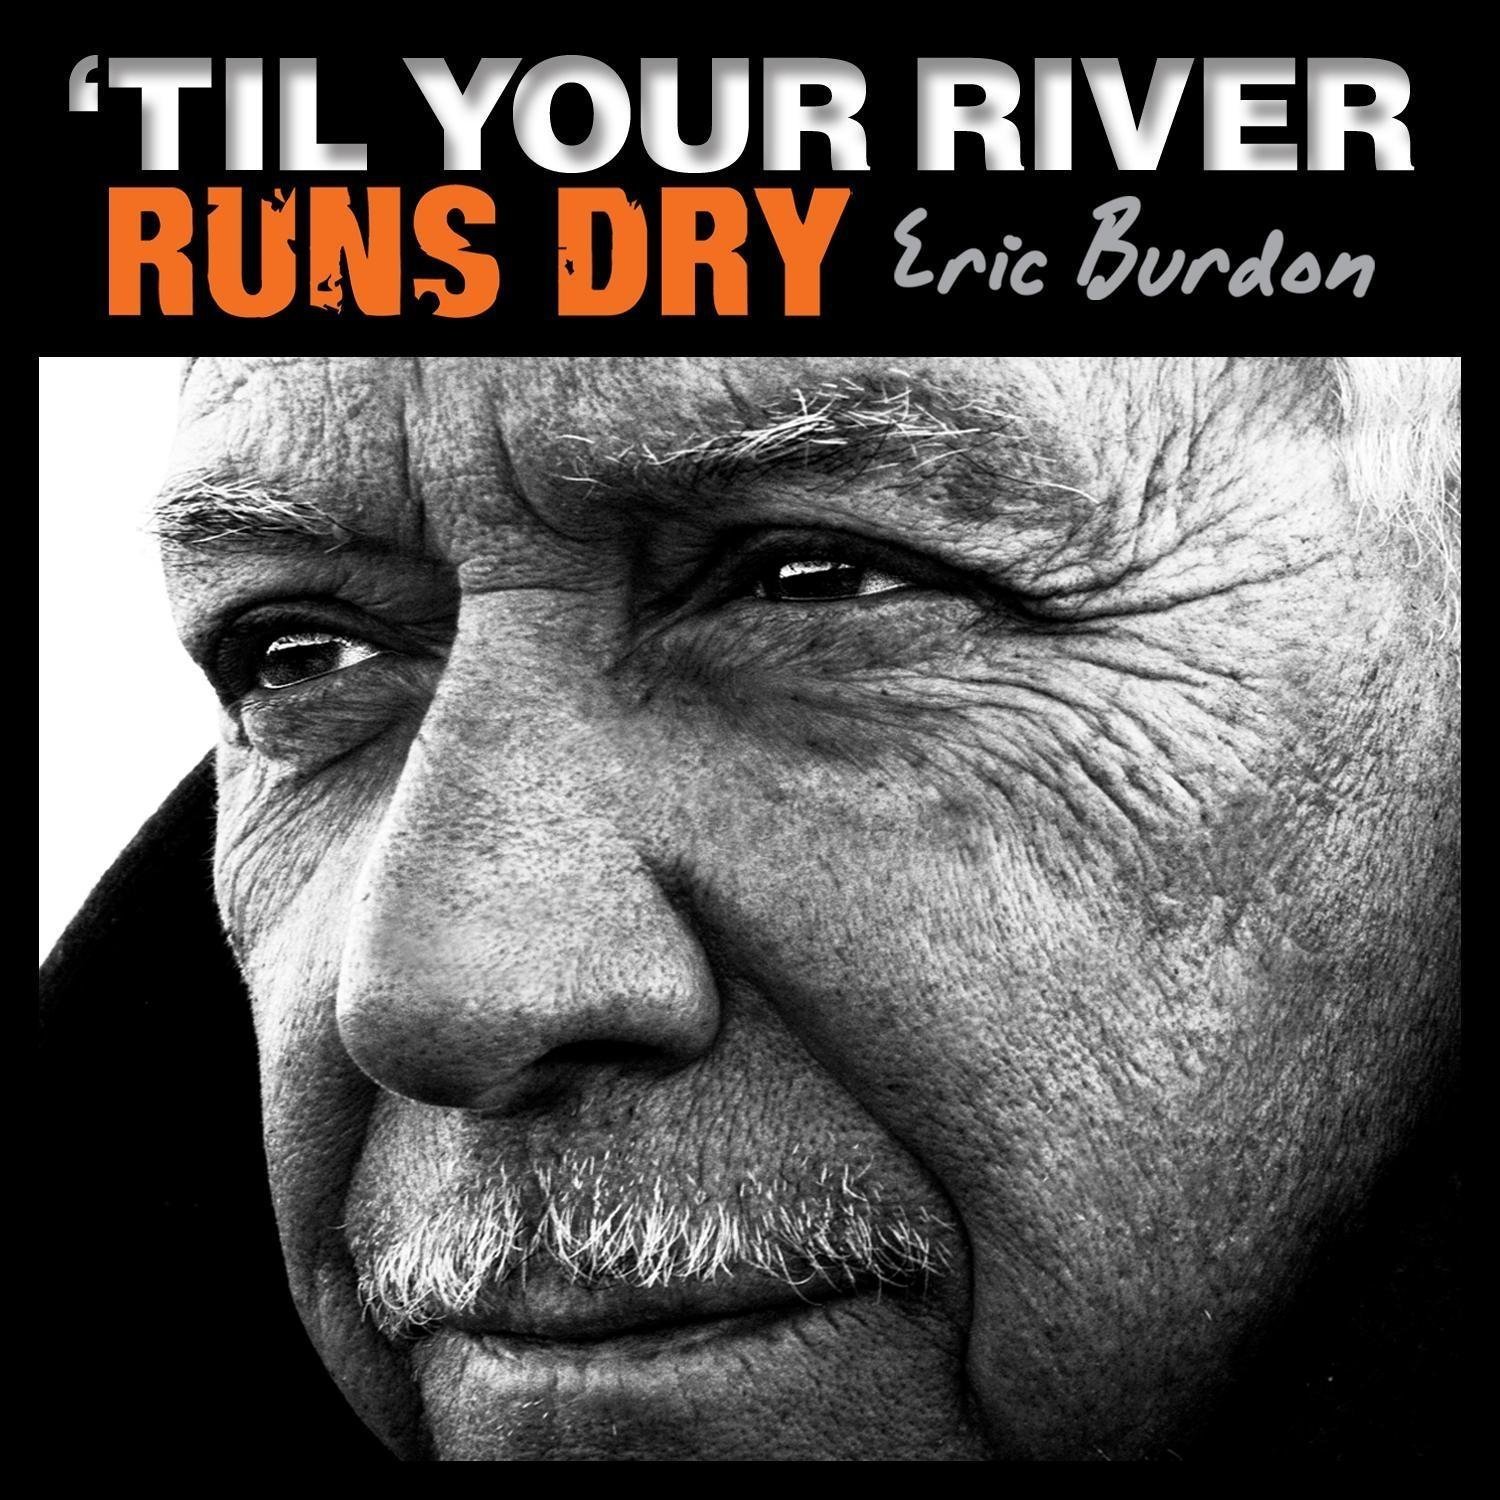 Vinile Eric Burdon - Til Your River Runs Dry NUOVO SIGILLATO, EDIZIONE DEL 01/03/2013 SUBITO DISPONIBILE